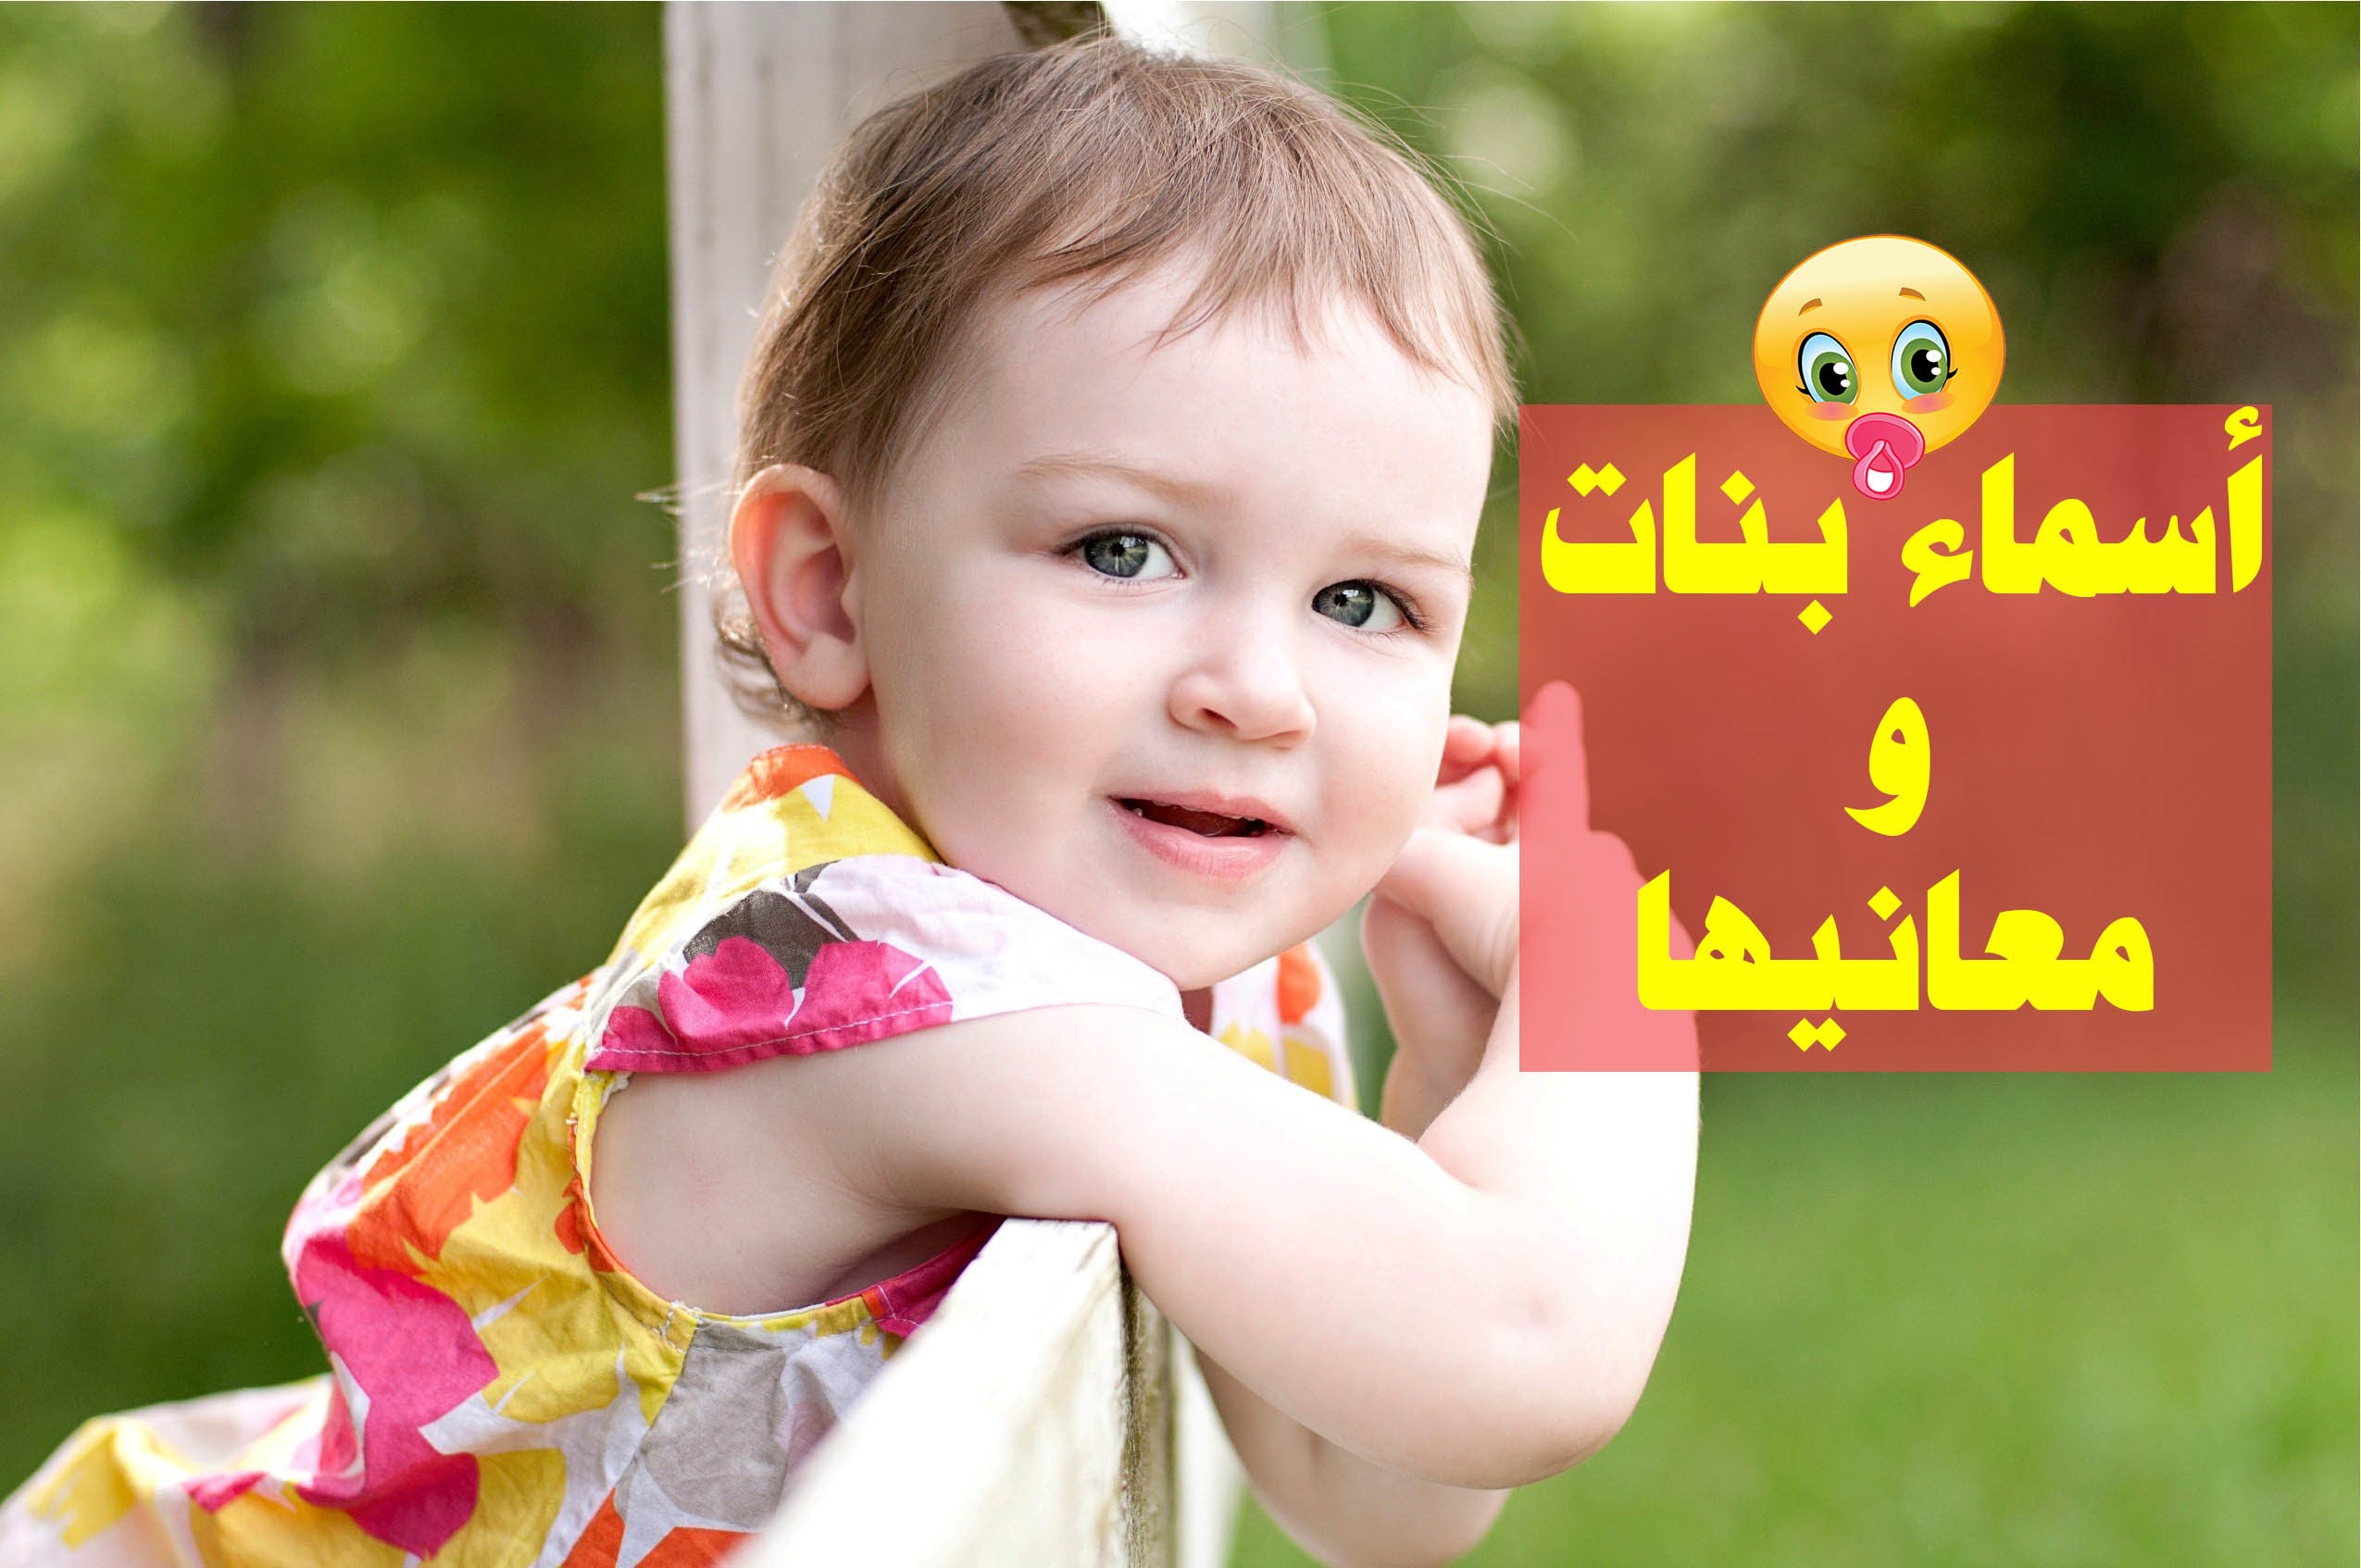 4066 8 اسماء بنات مميزة ومعانيها - معاني اسماء البنات جهراء دياب